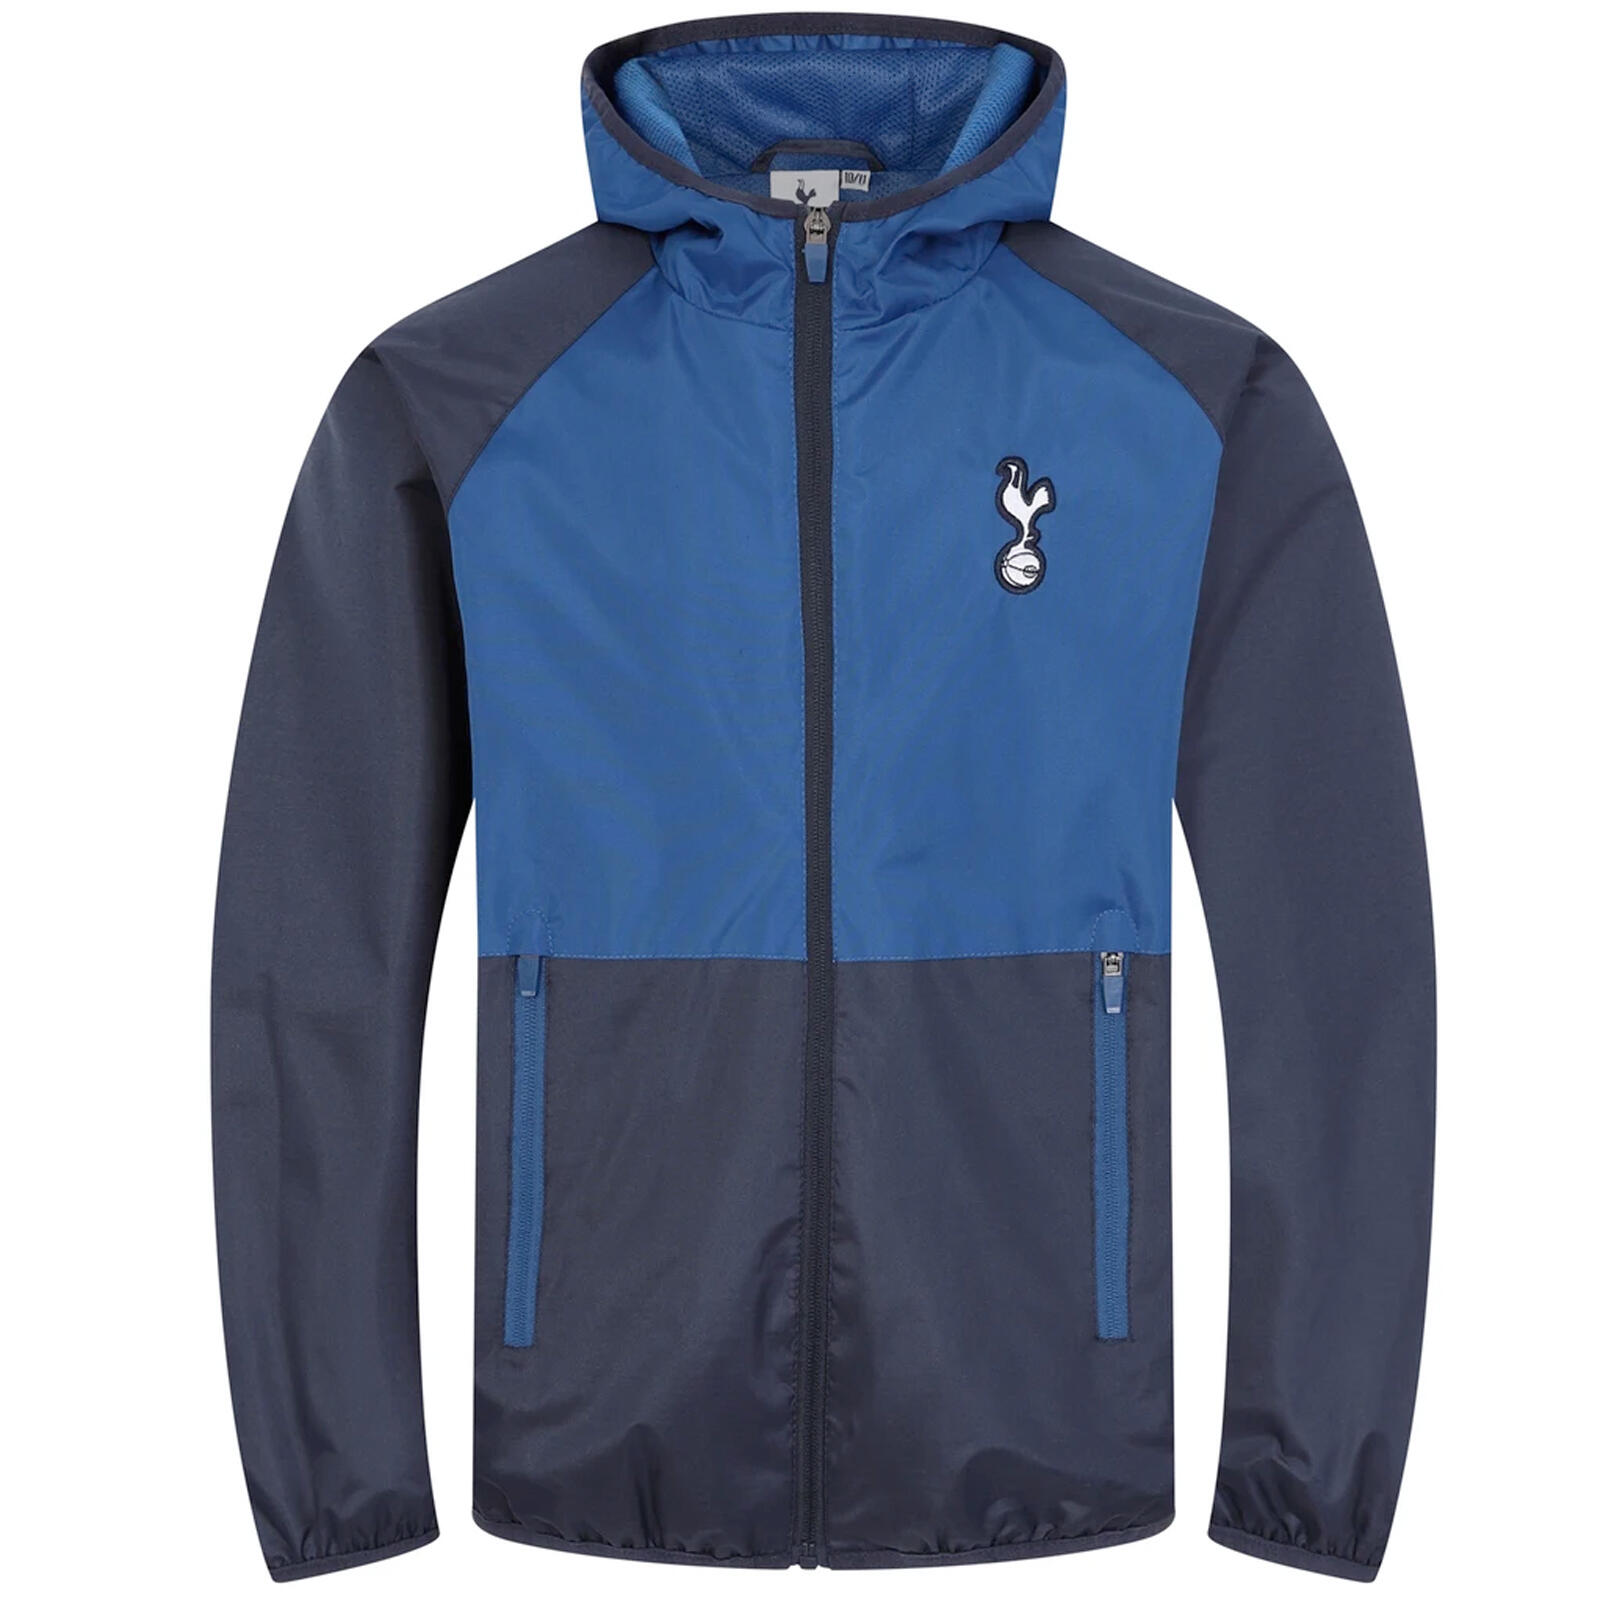 TOTTENHAM HOTSPUR Tottenham Hotspur Boys Jacket Shower Windbreaker Kids OFFICIAL Football Gift